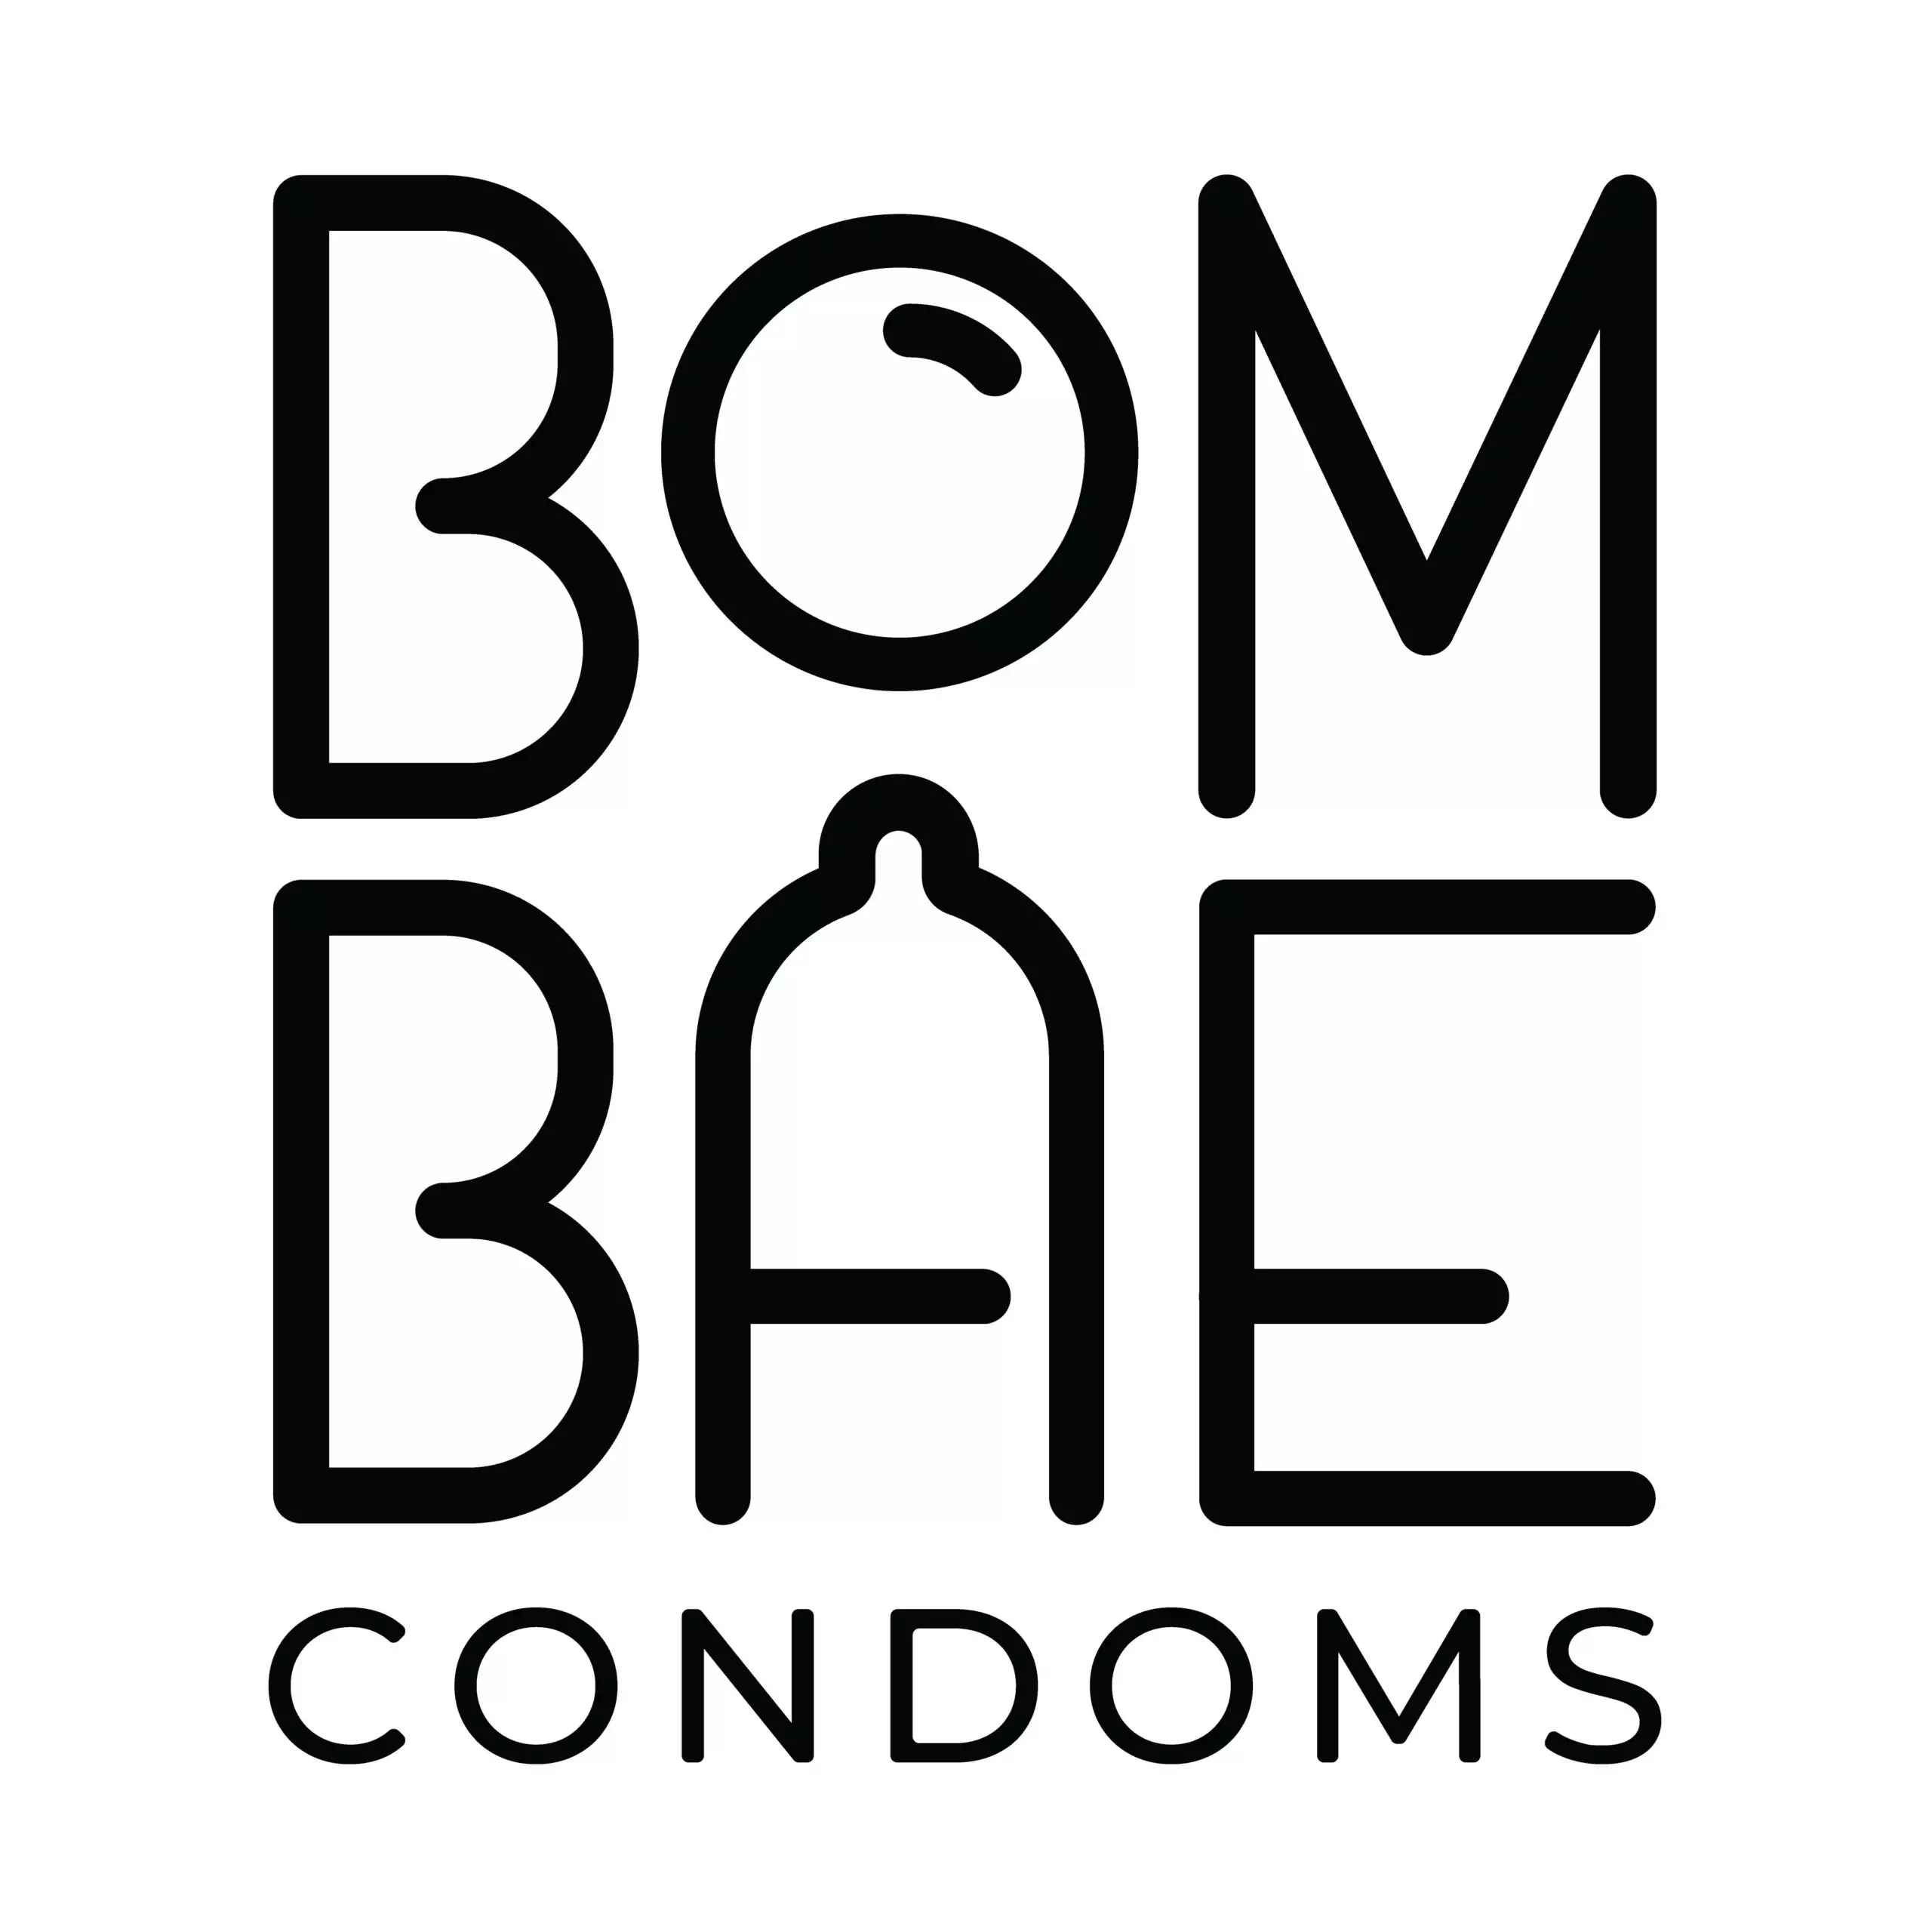 Bombae Condoms